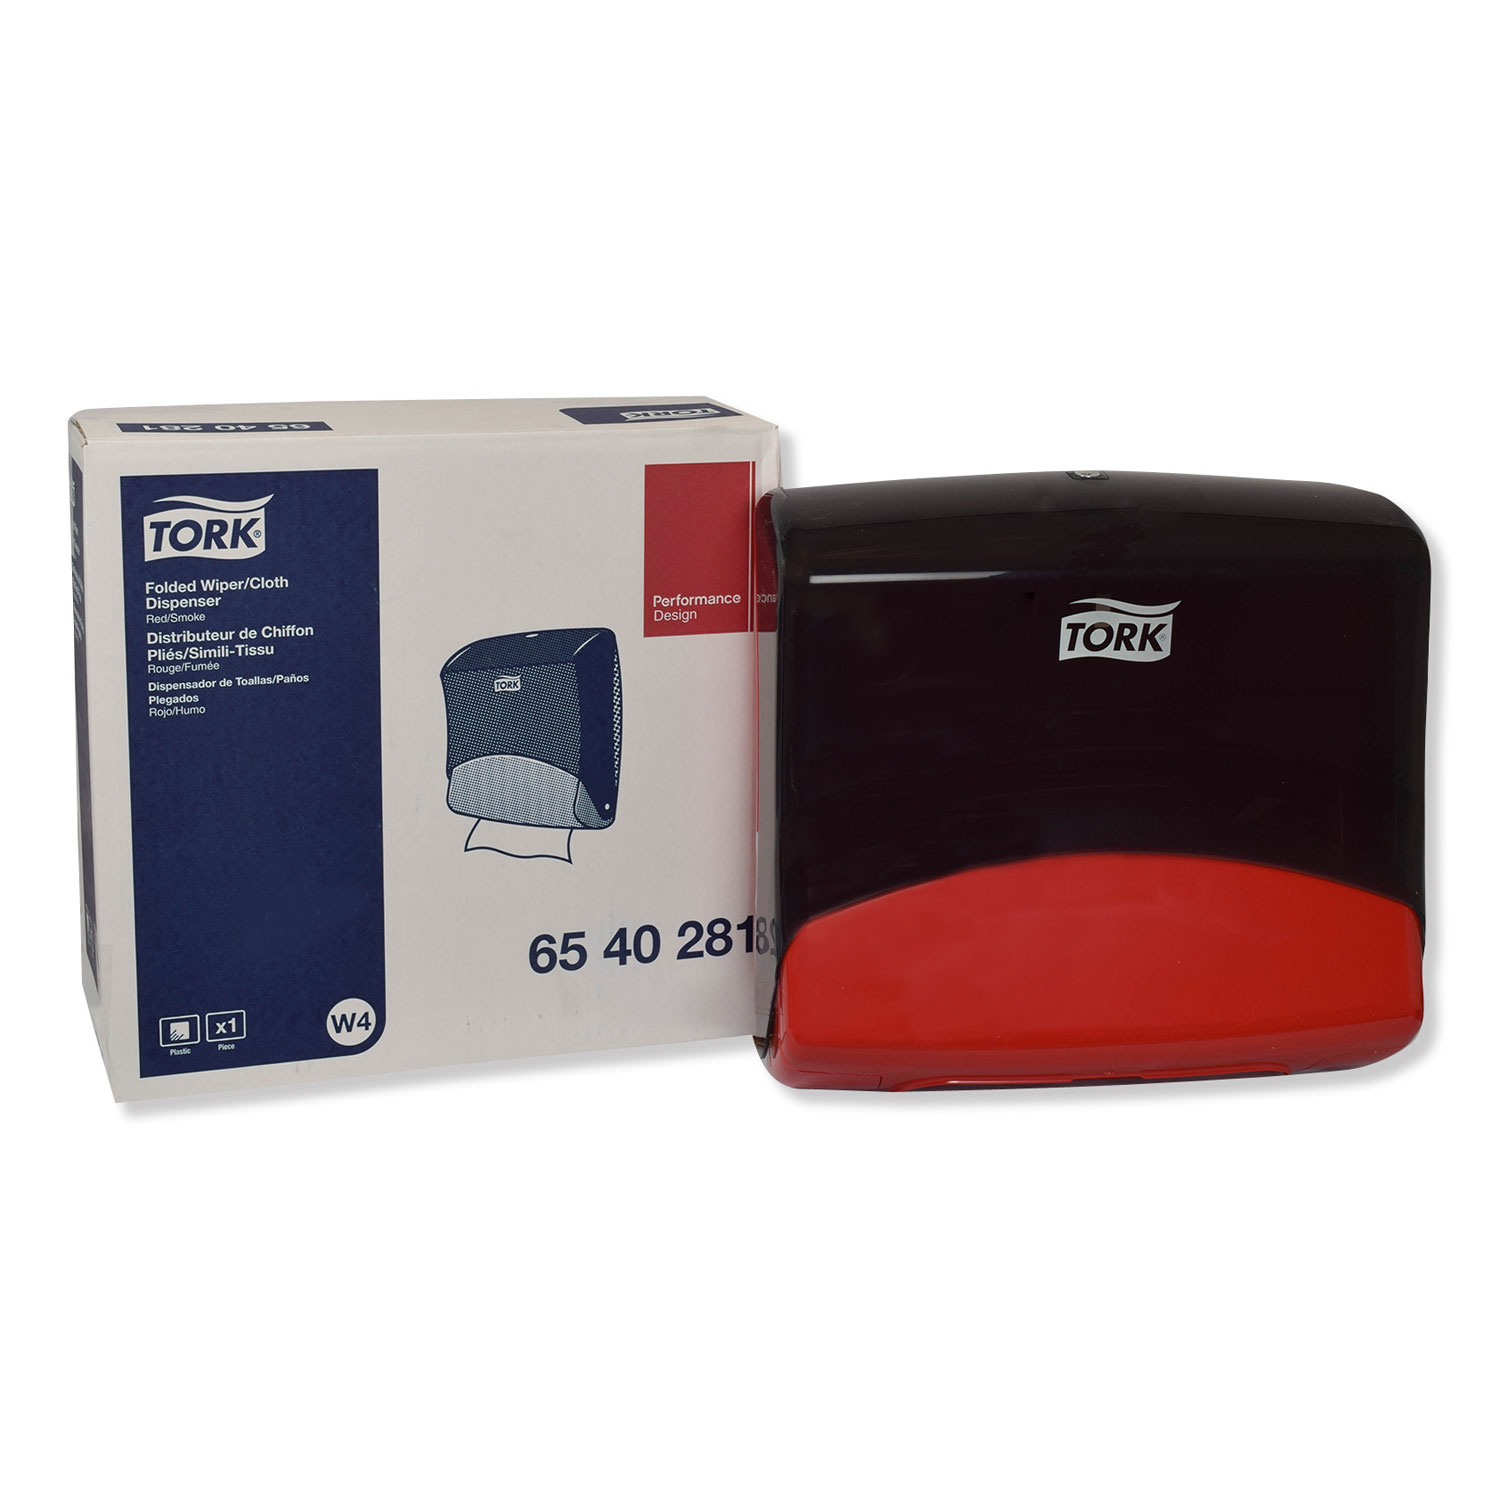  Tork 6540281 Performance Folded Wiper/Cloth Dispenser, Plastic, 16.81 x 8.11 x 15.51, Red (TRK6540281) 